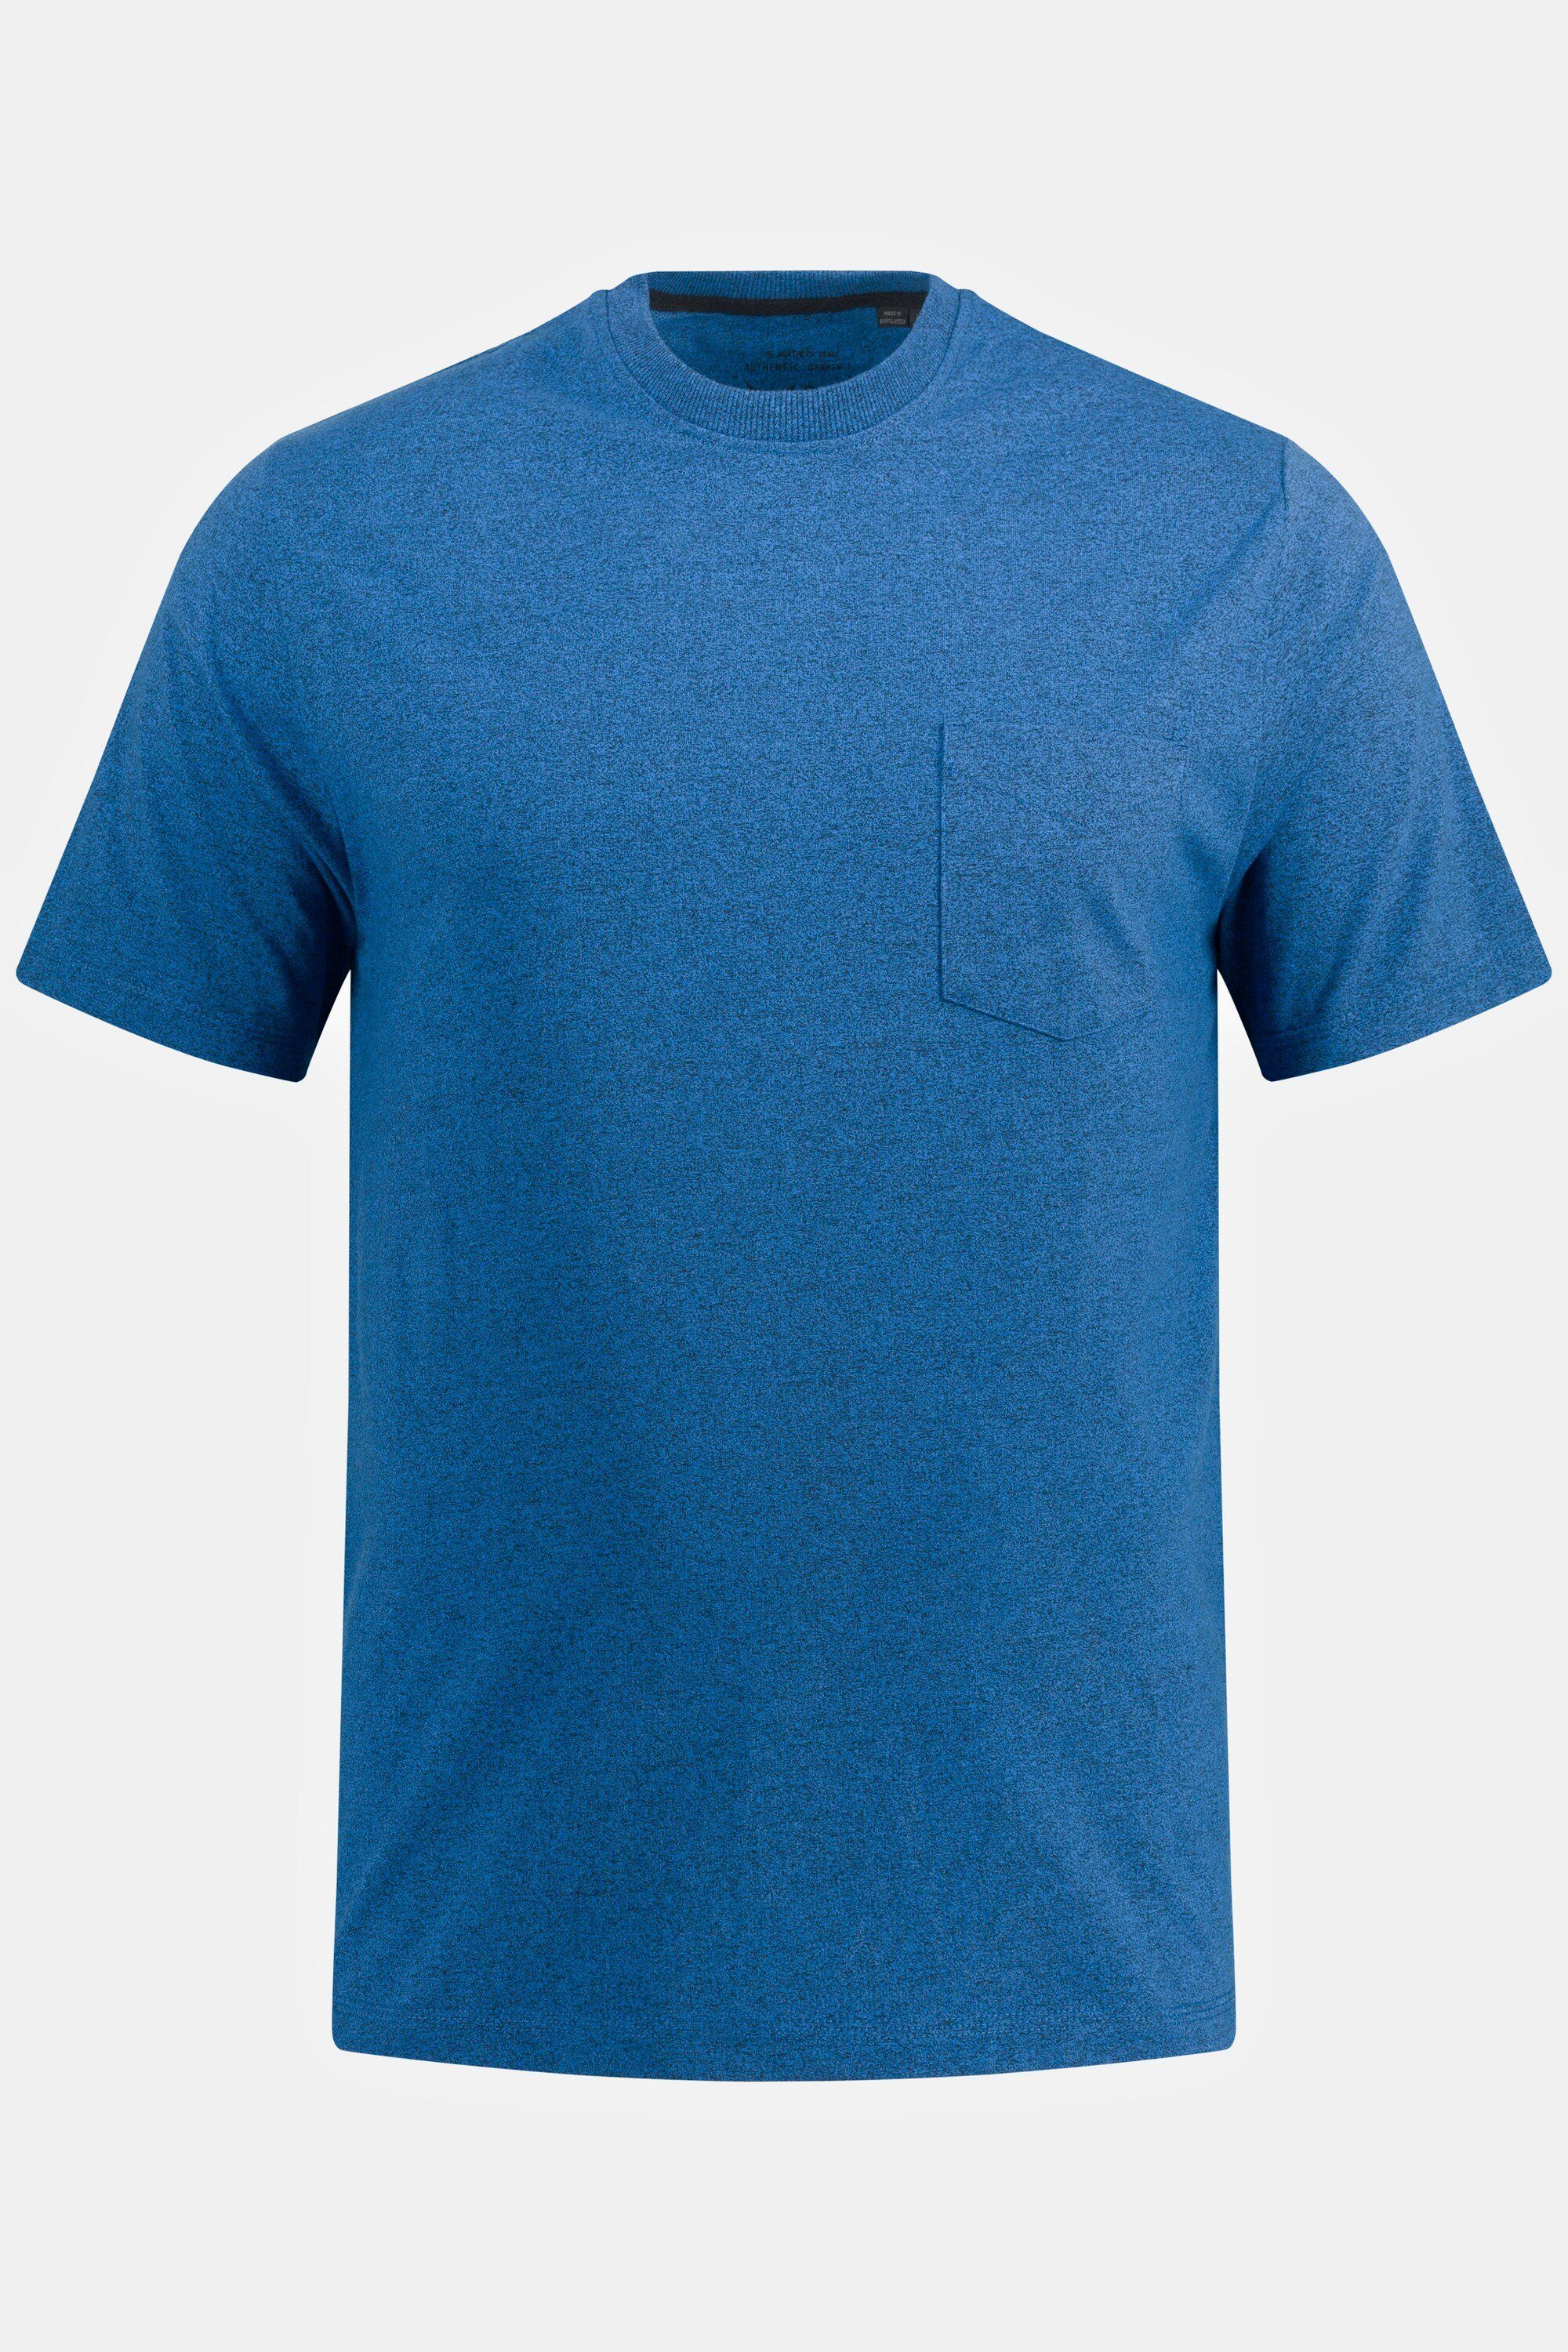 JP1880 T-Shirt T-Shirt Rundhals mittelblau Brusttasche Halbarm